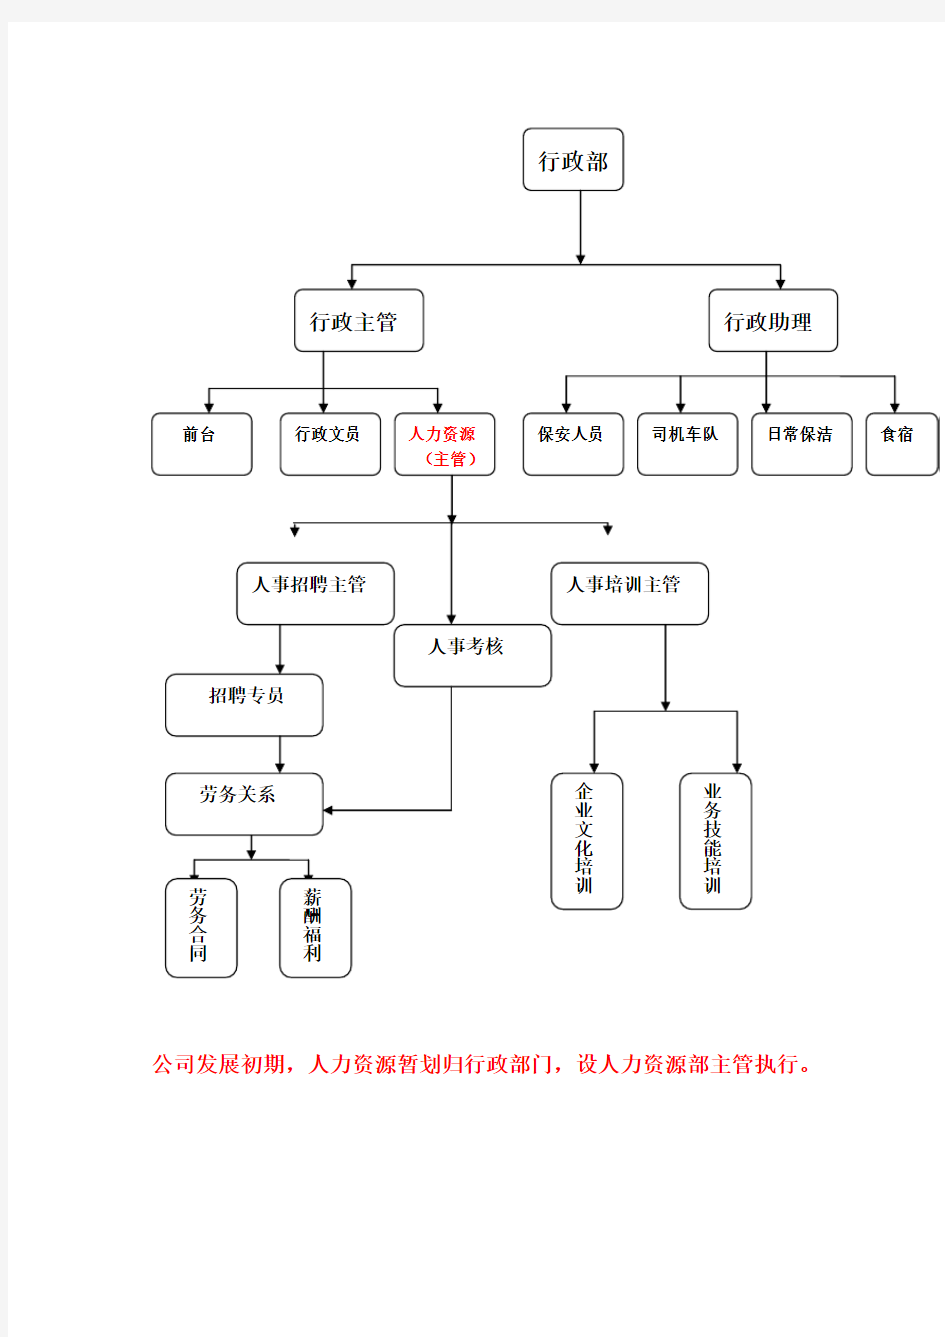 阪神电器集团组织结构和说明